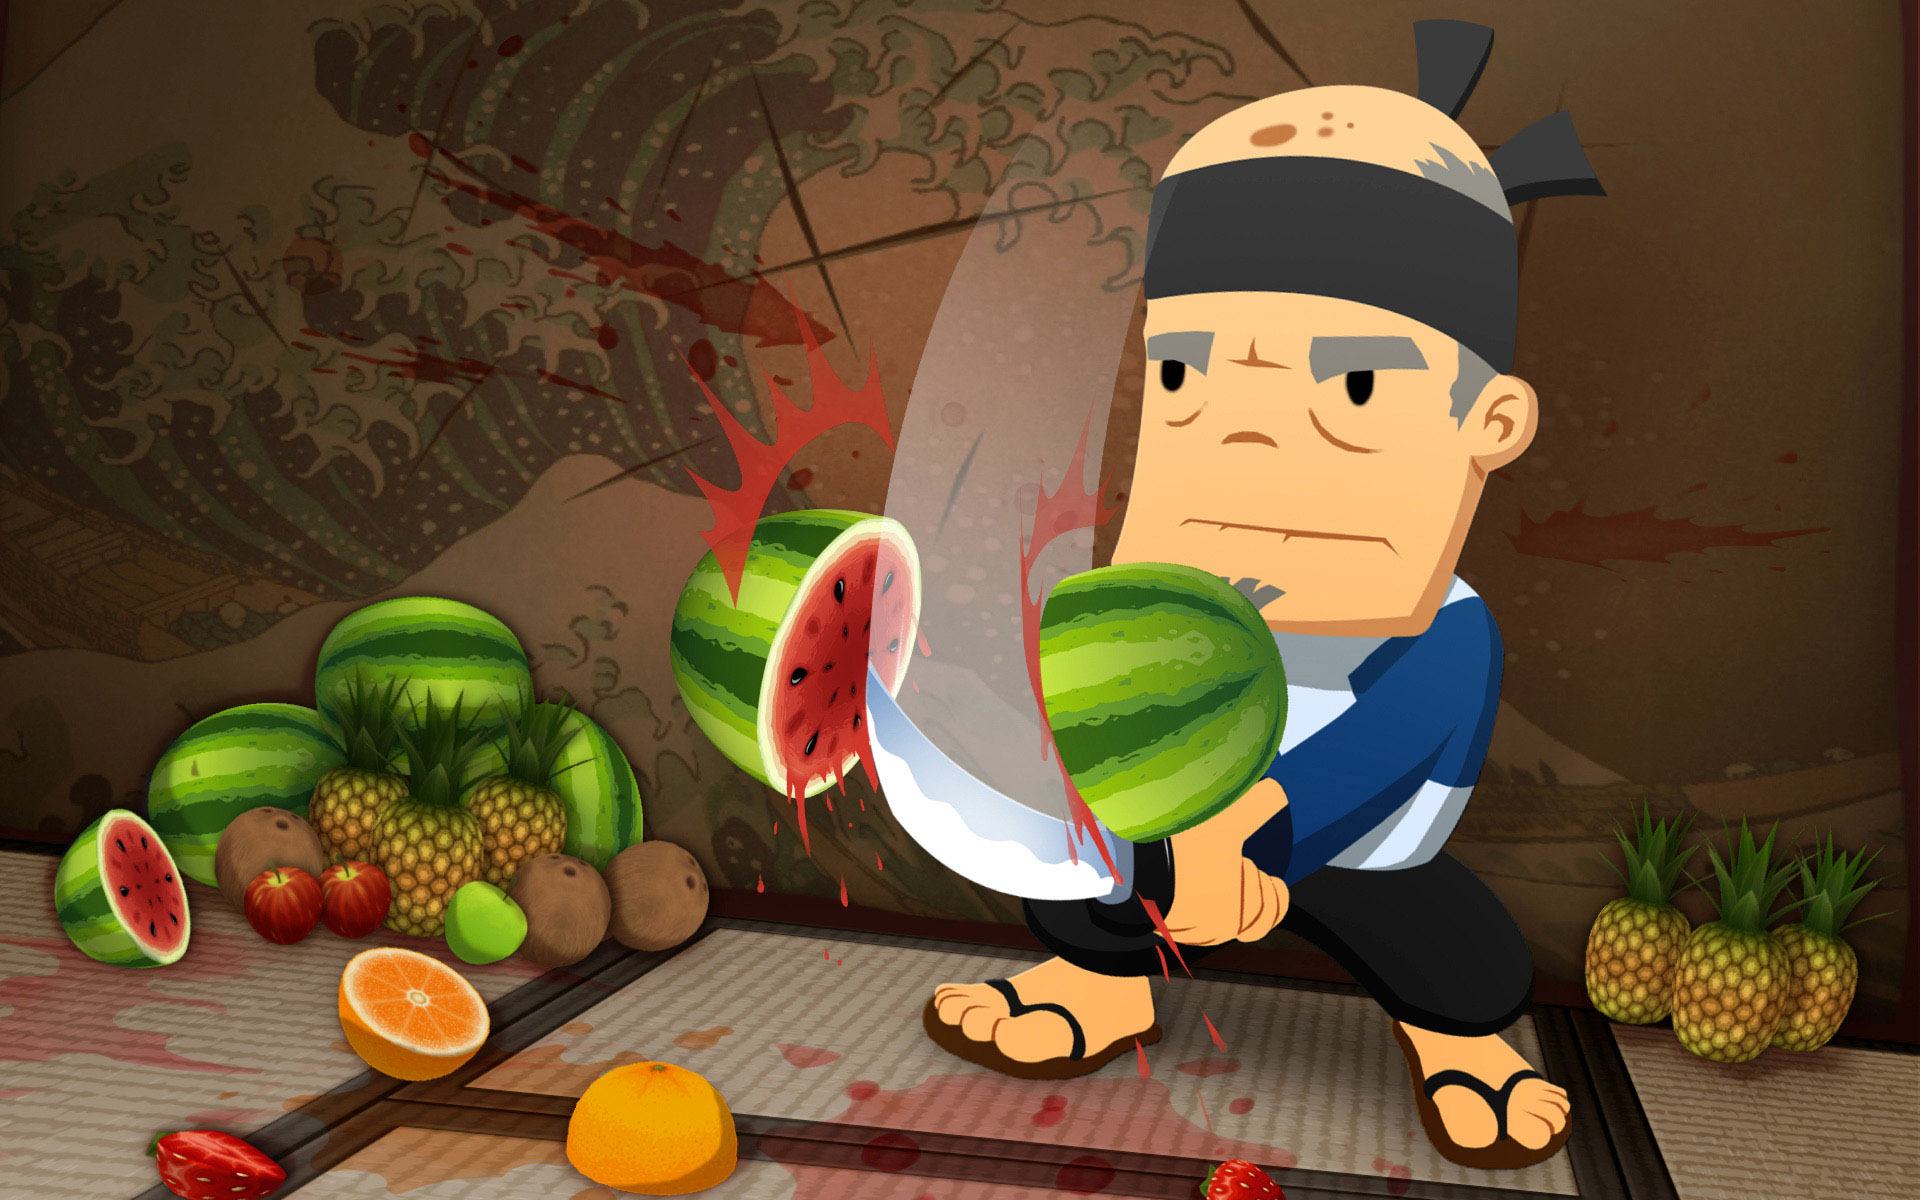 Filme baseado no jogo de celular Fruit Ninja é confirmado pela